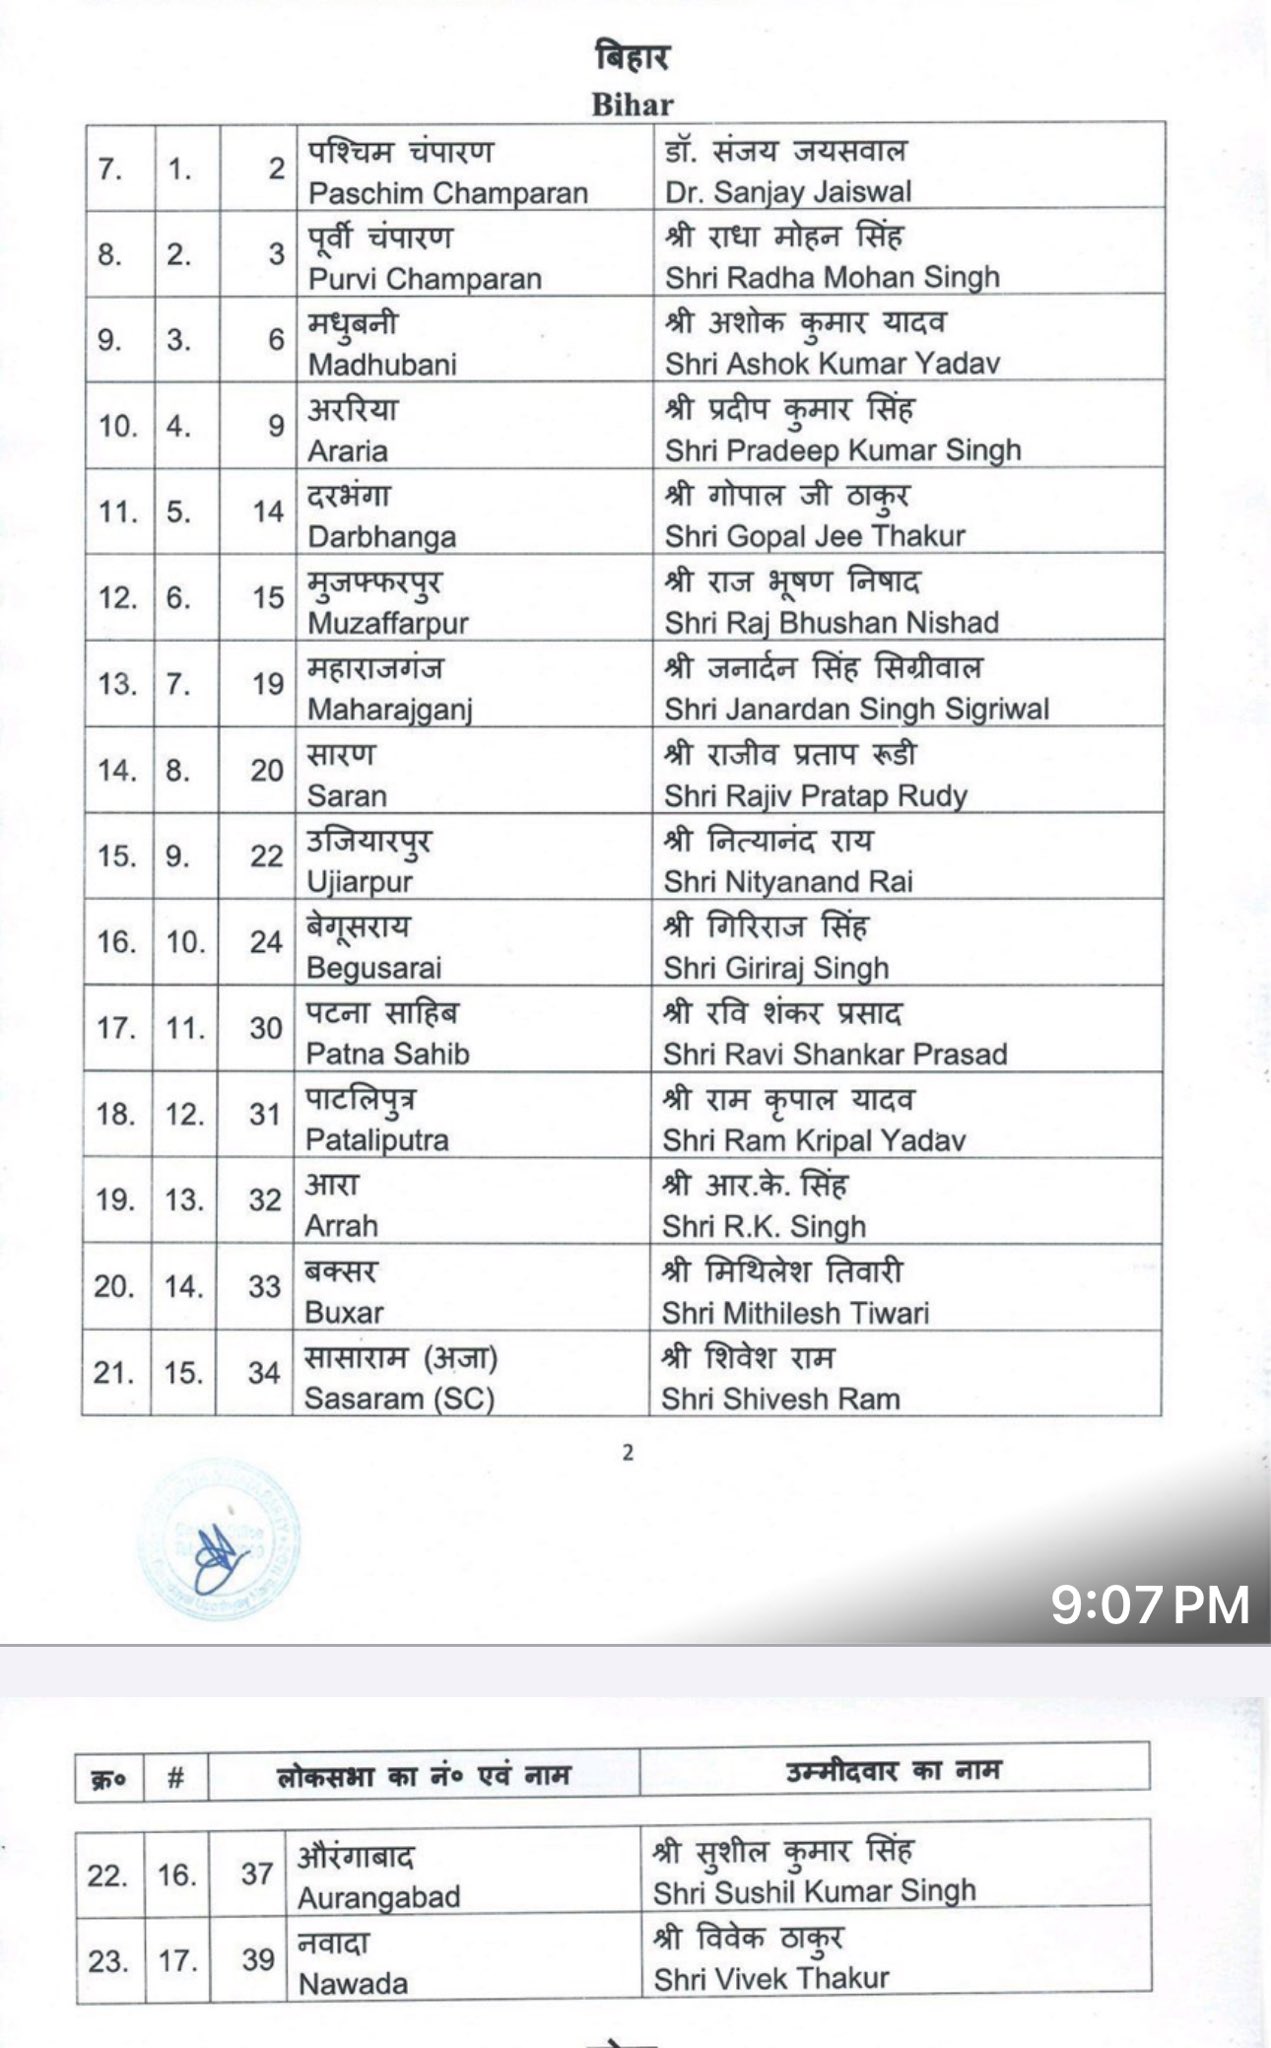 BJP Releases Bihar Candidate List